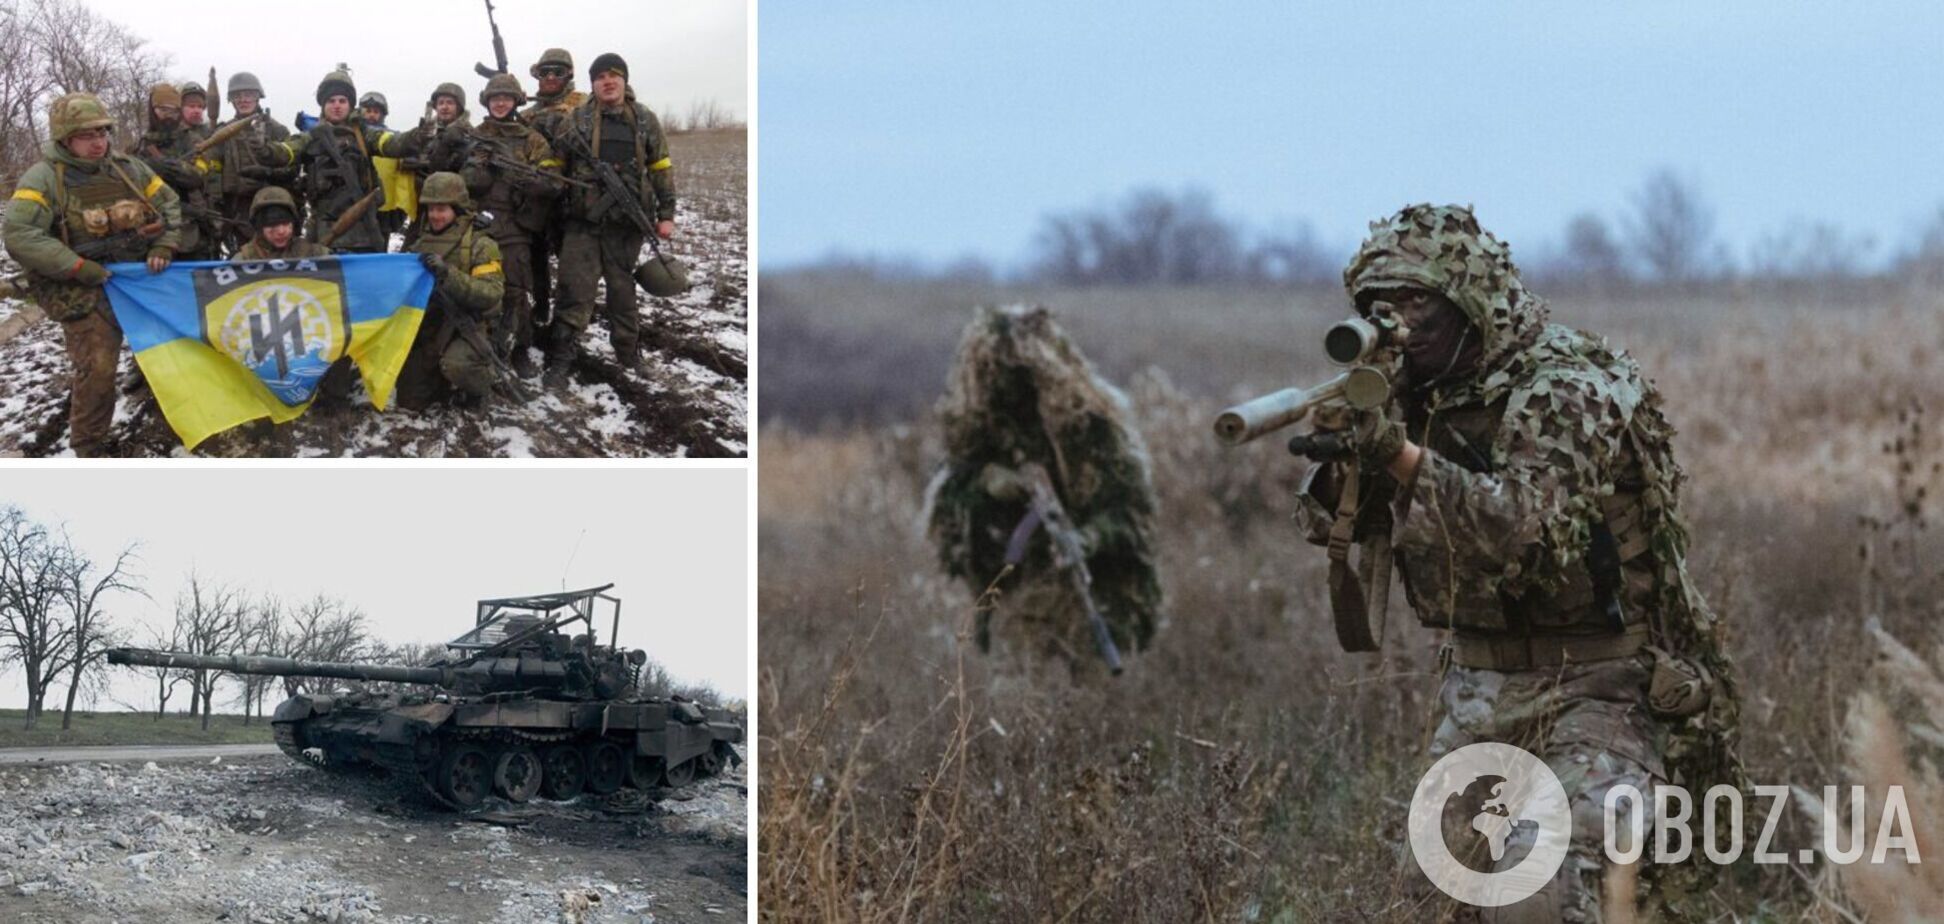 Бойцы 'Азова' ликвидировали 17 спецназовцев ГРУ России и вражескую технику